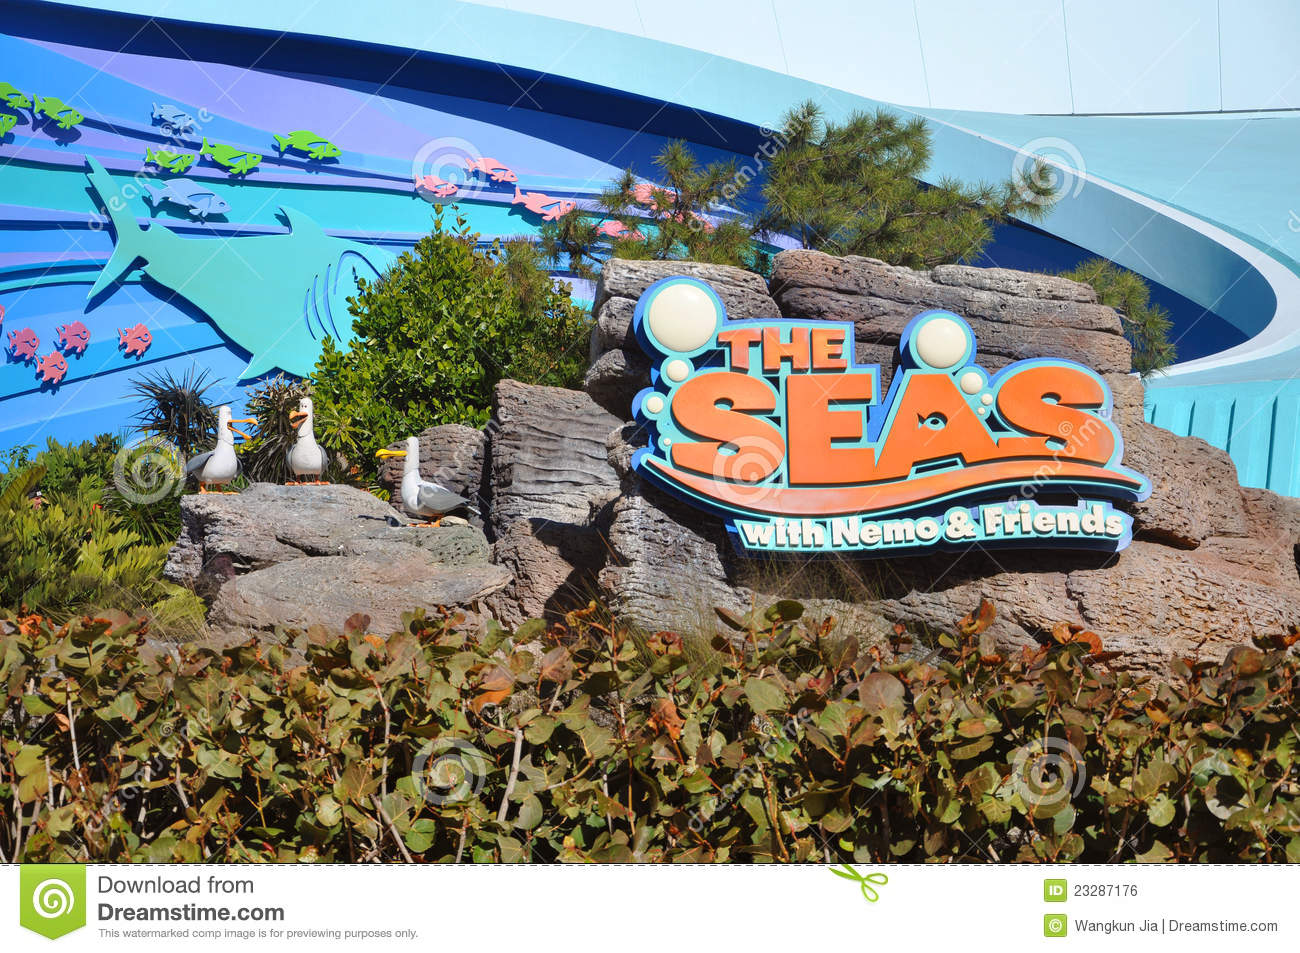 Disney Epcot Center And The Seas Disney World Orlando Florida Usa 